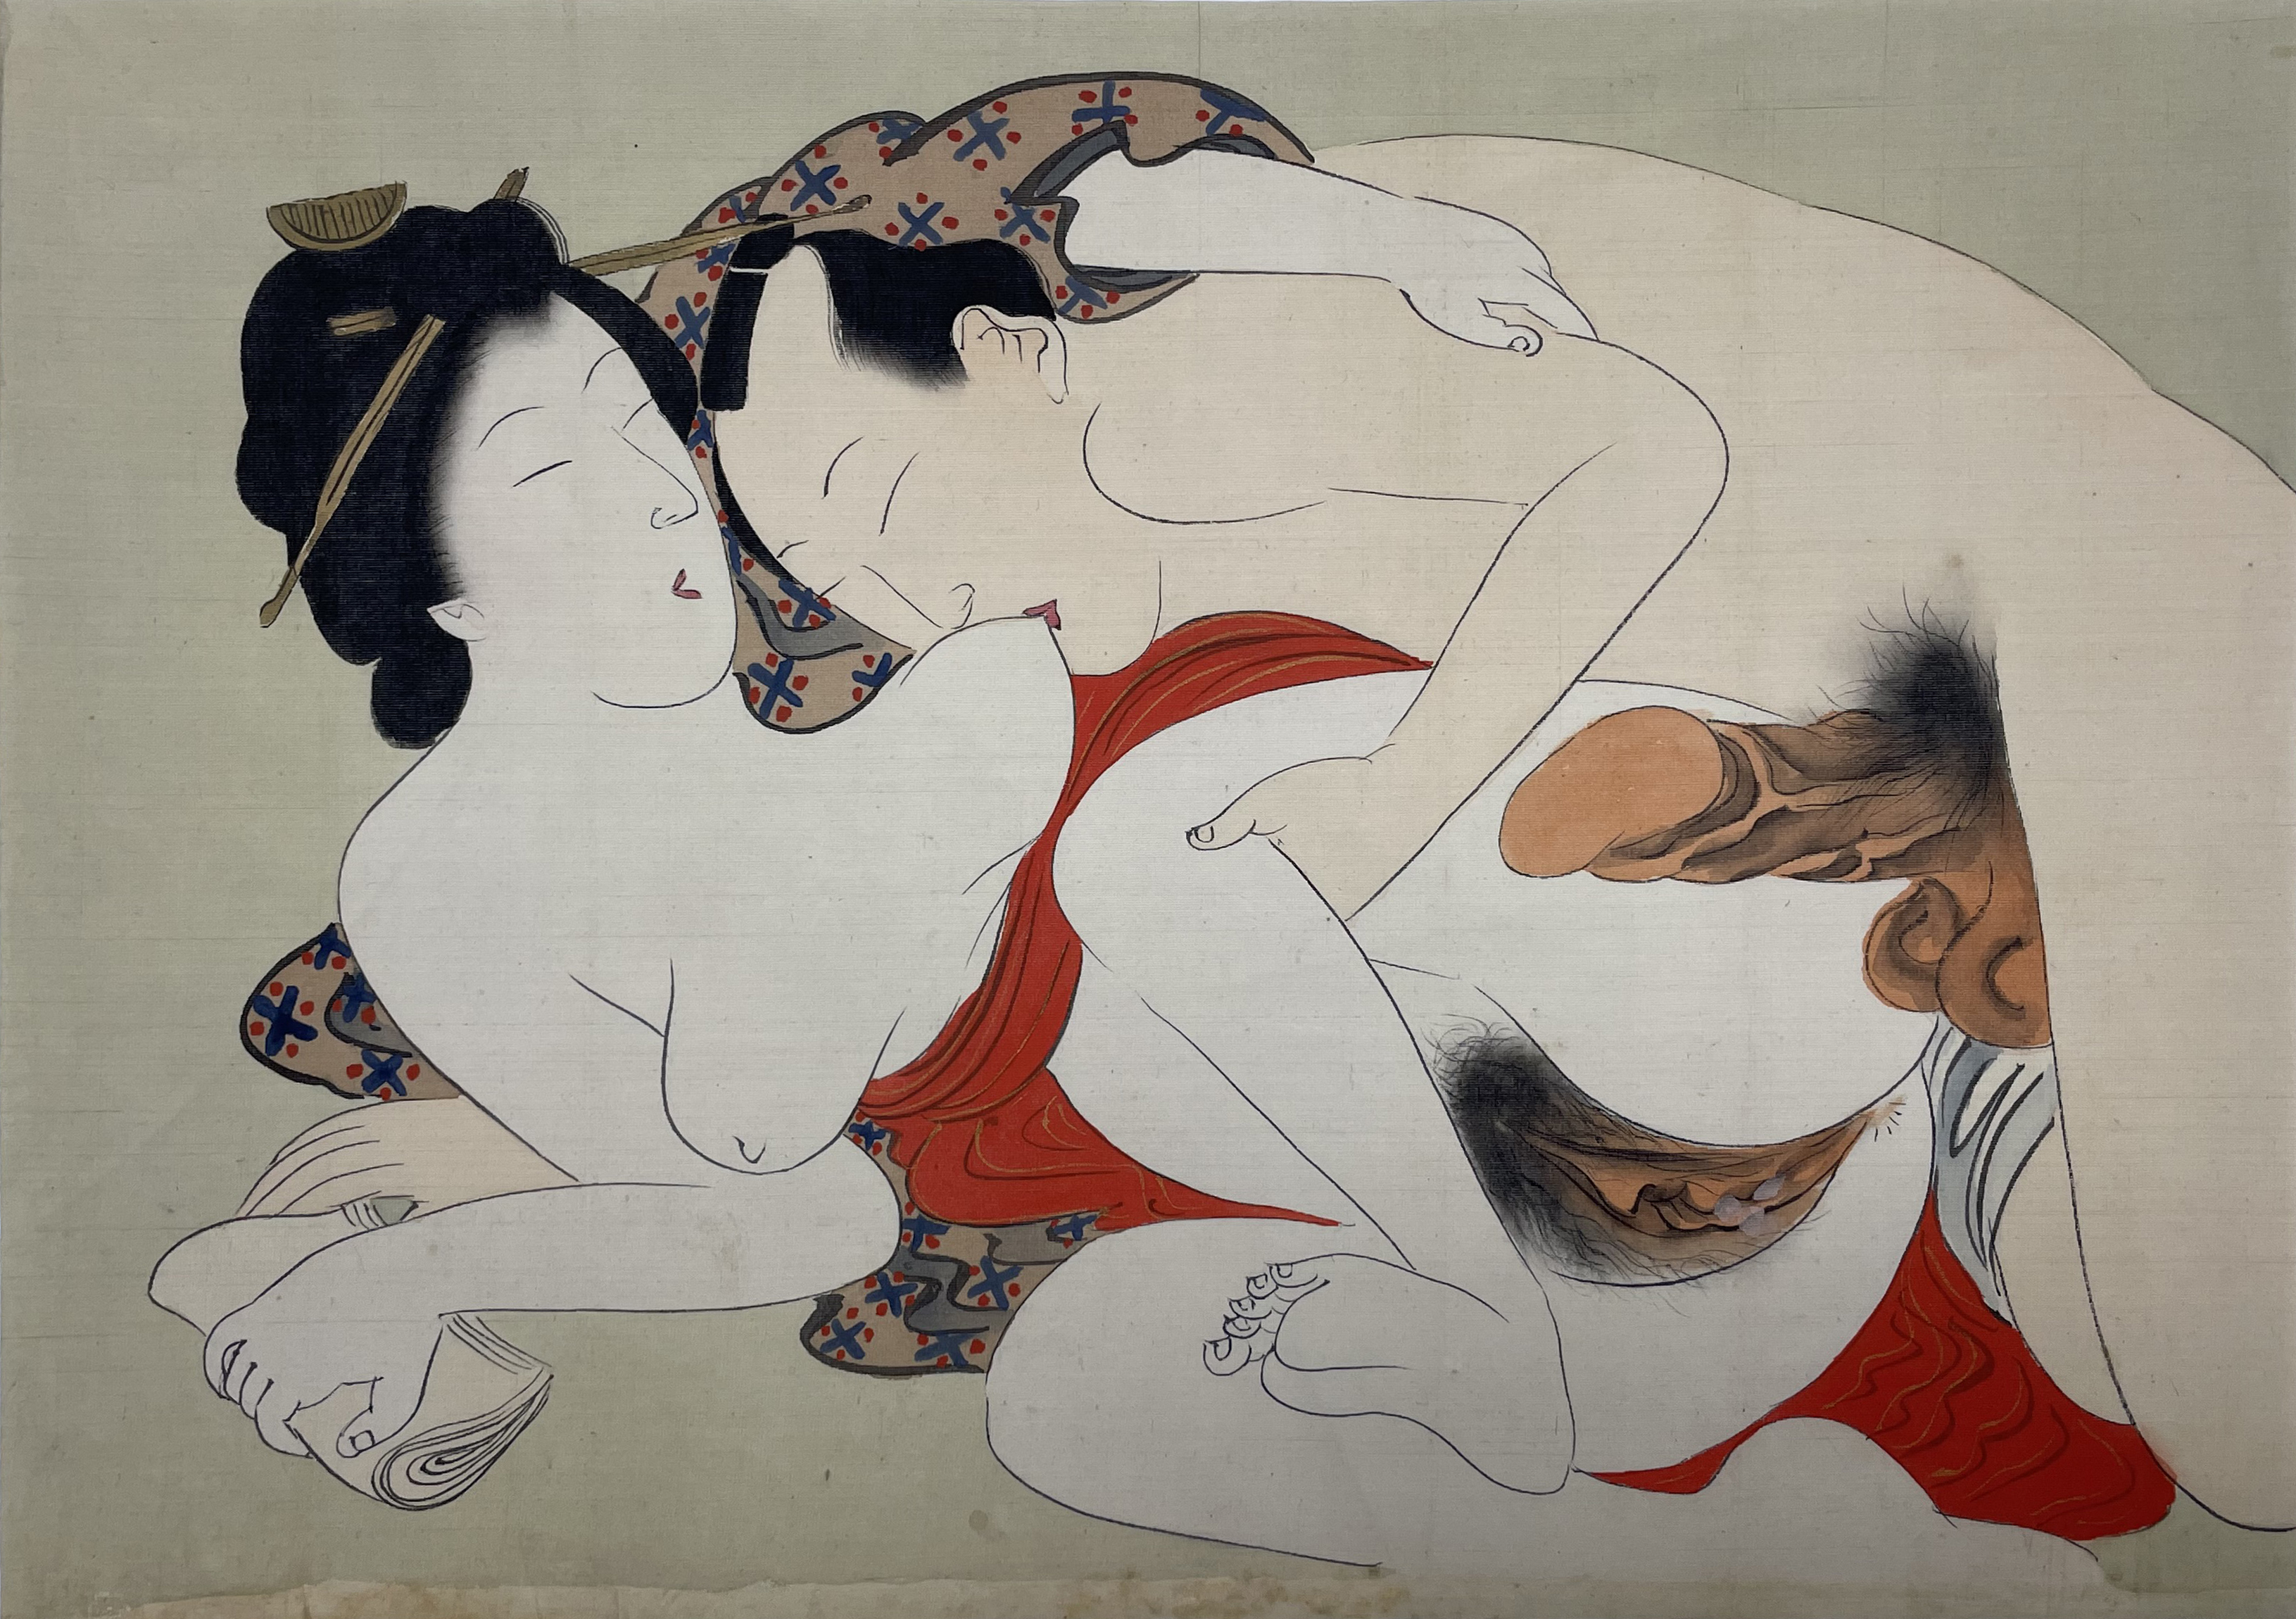 【日本版画】扬州周延 绢布春画 1891年 35 x 25cm